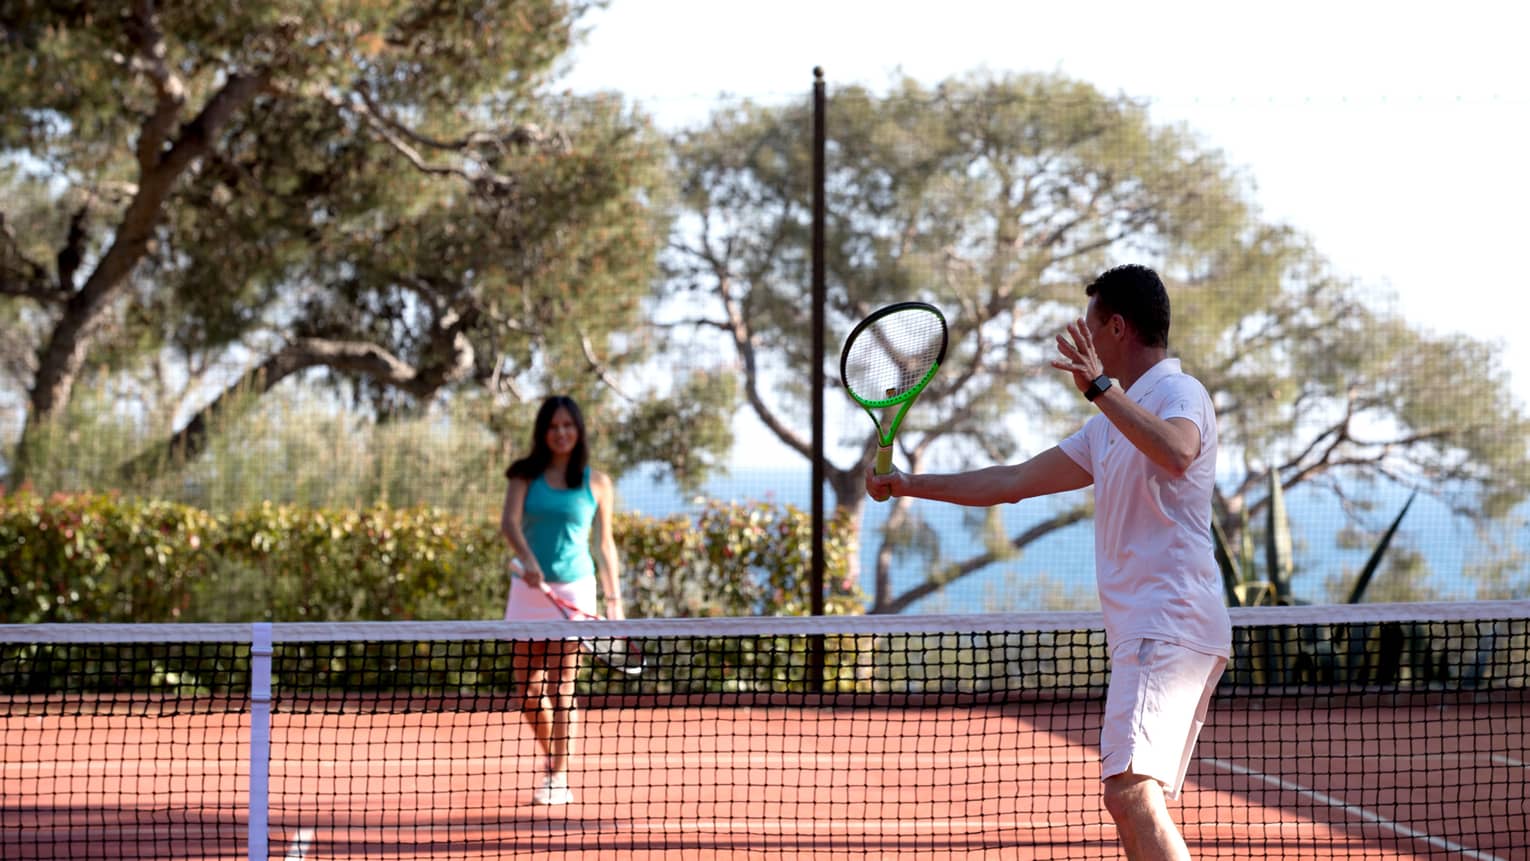 Man swing tennis racket, woman on other side of net